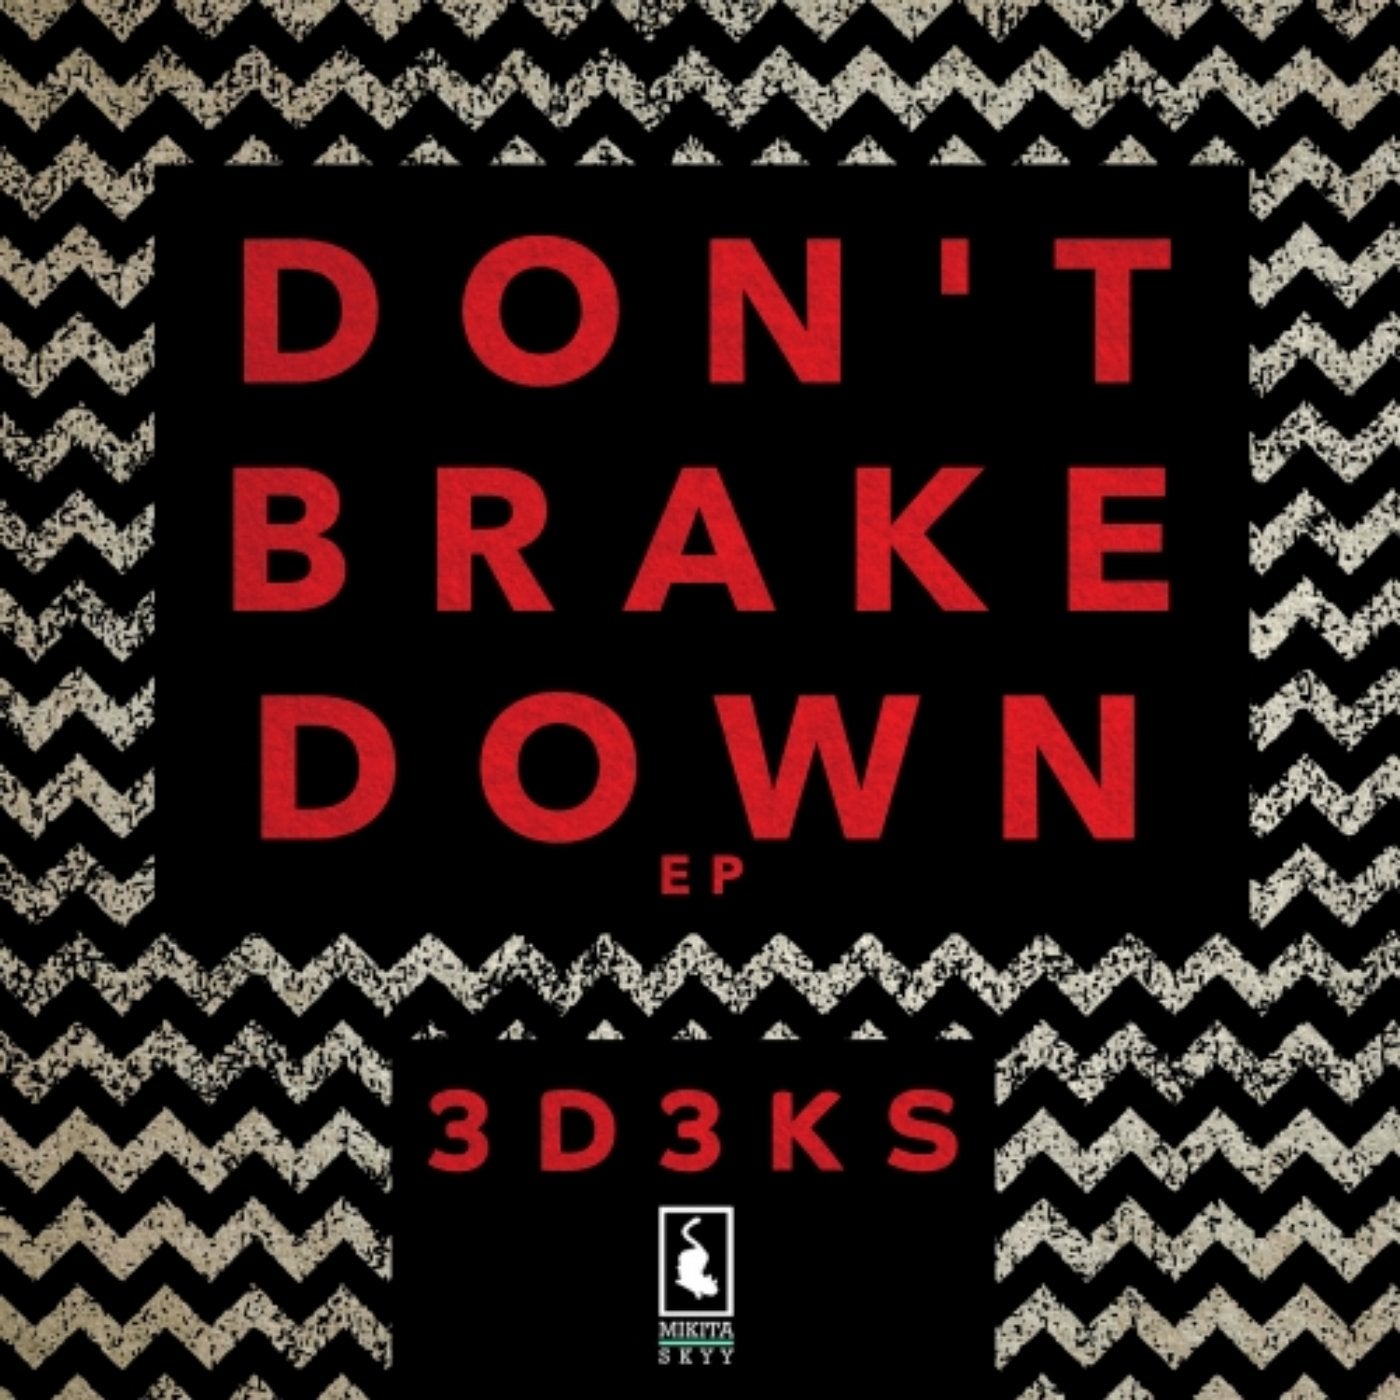 Don't Brake Down